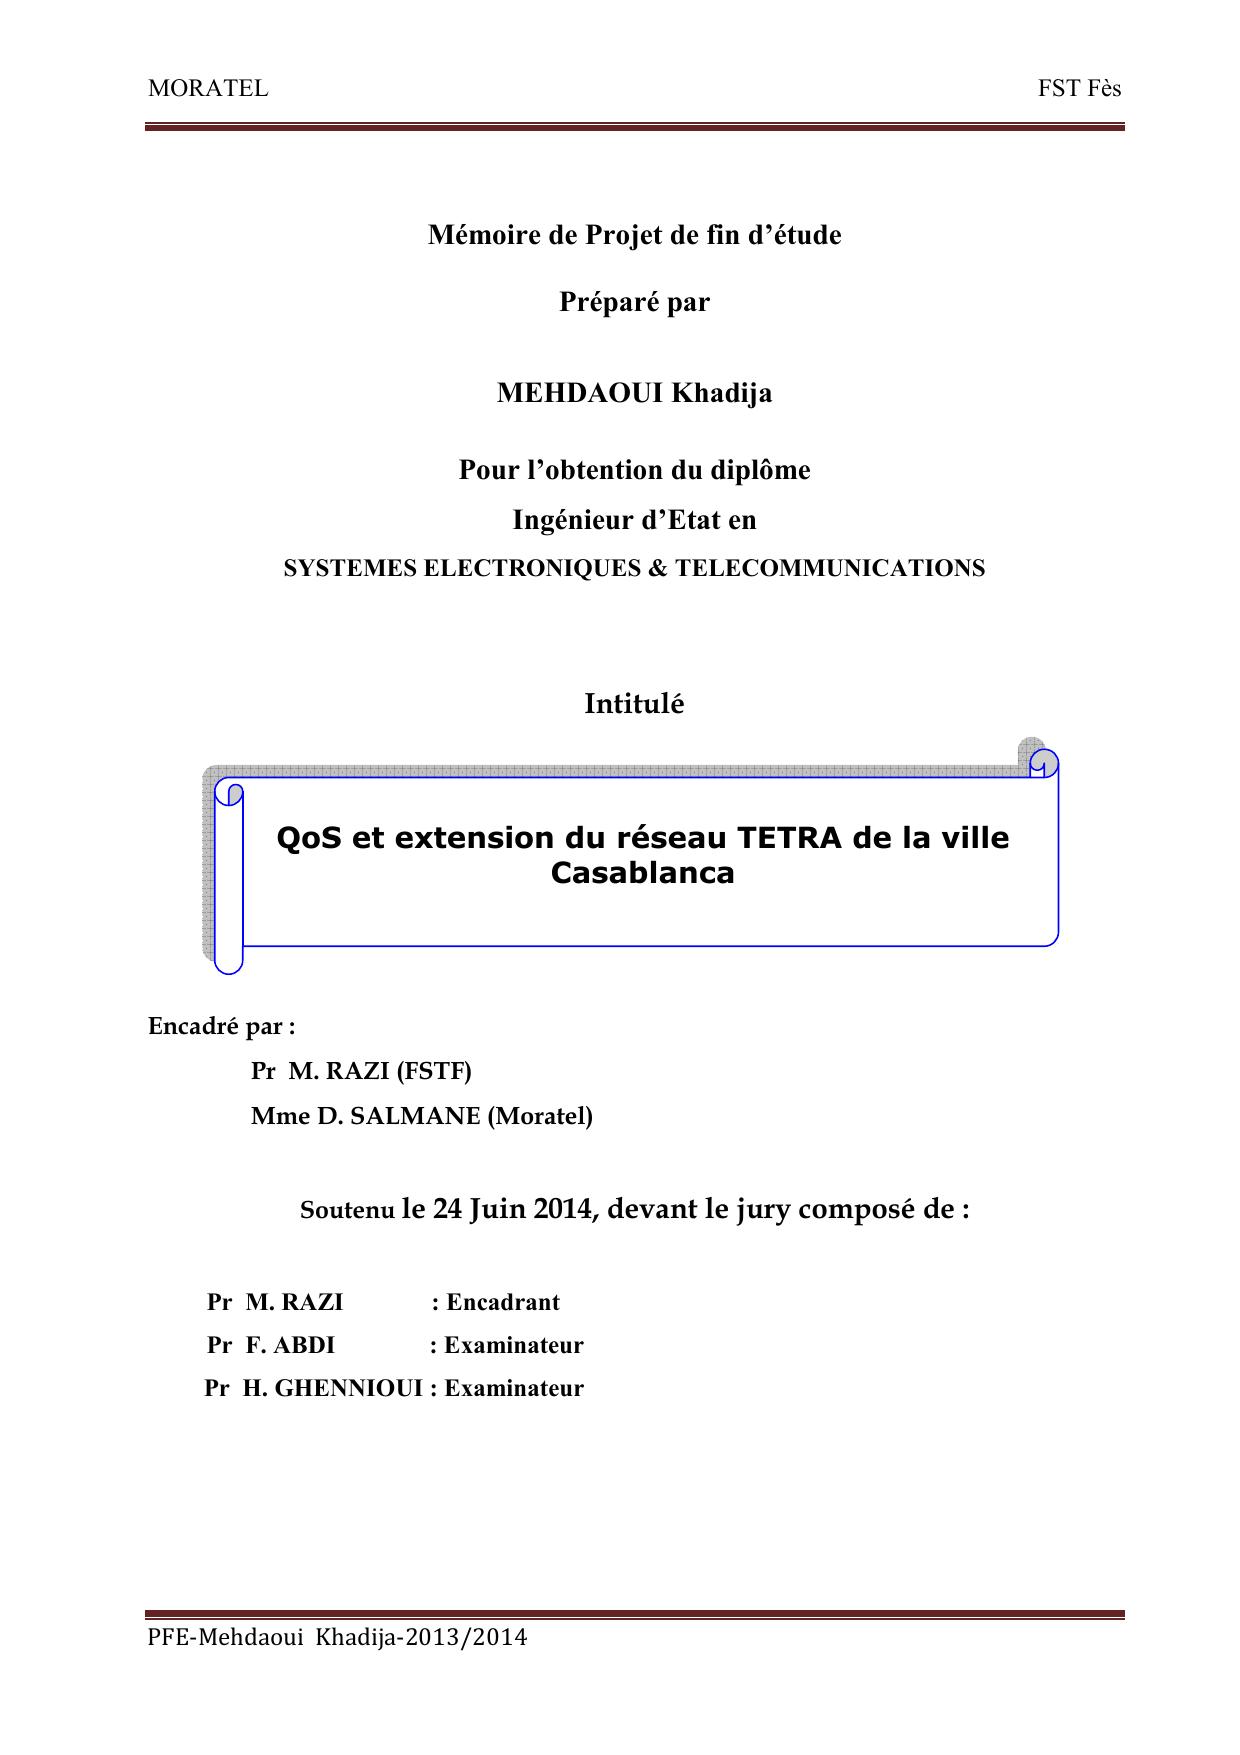 QoS et extension du réseau TETRA de la ville Casablanca